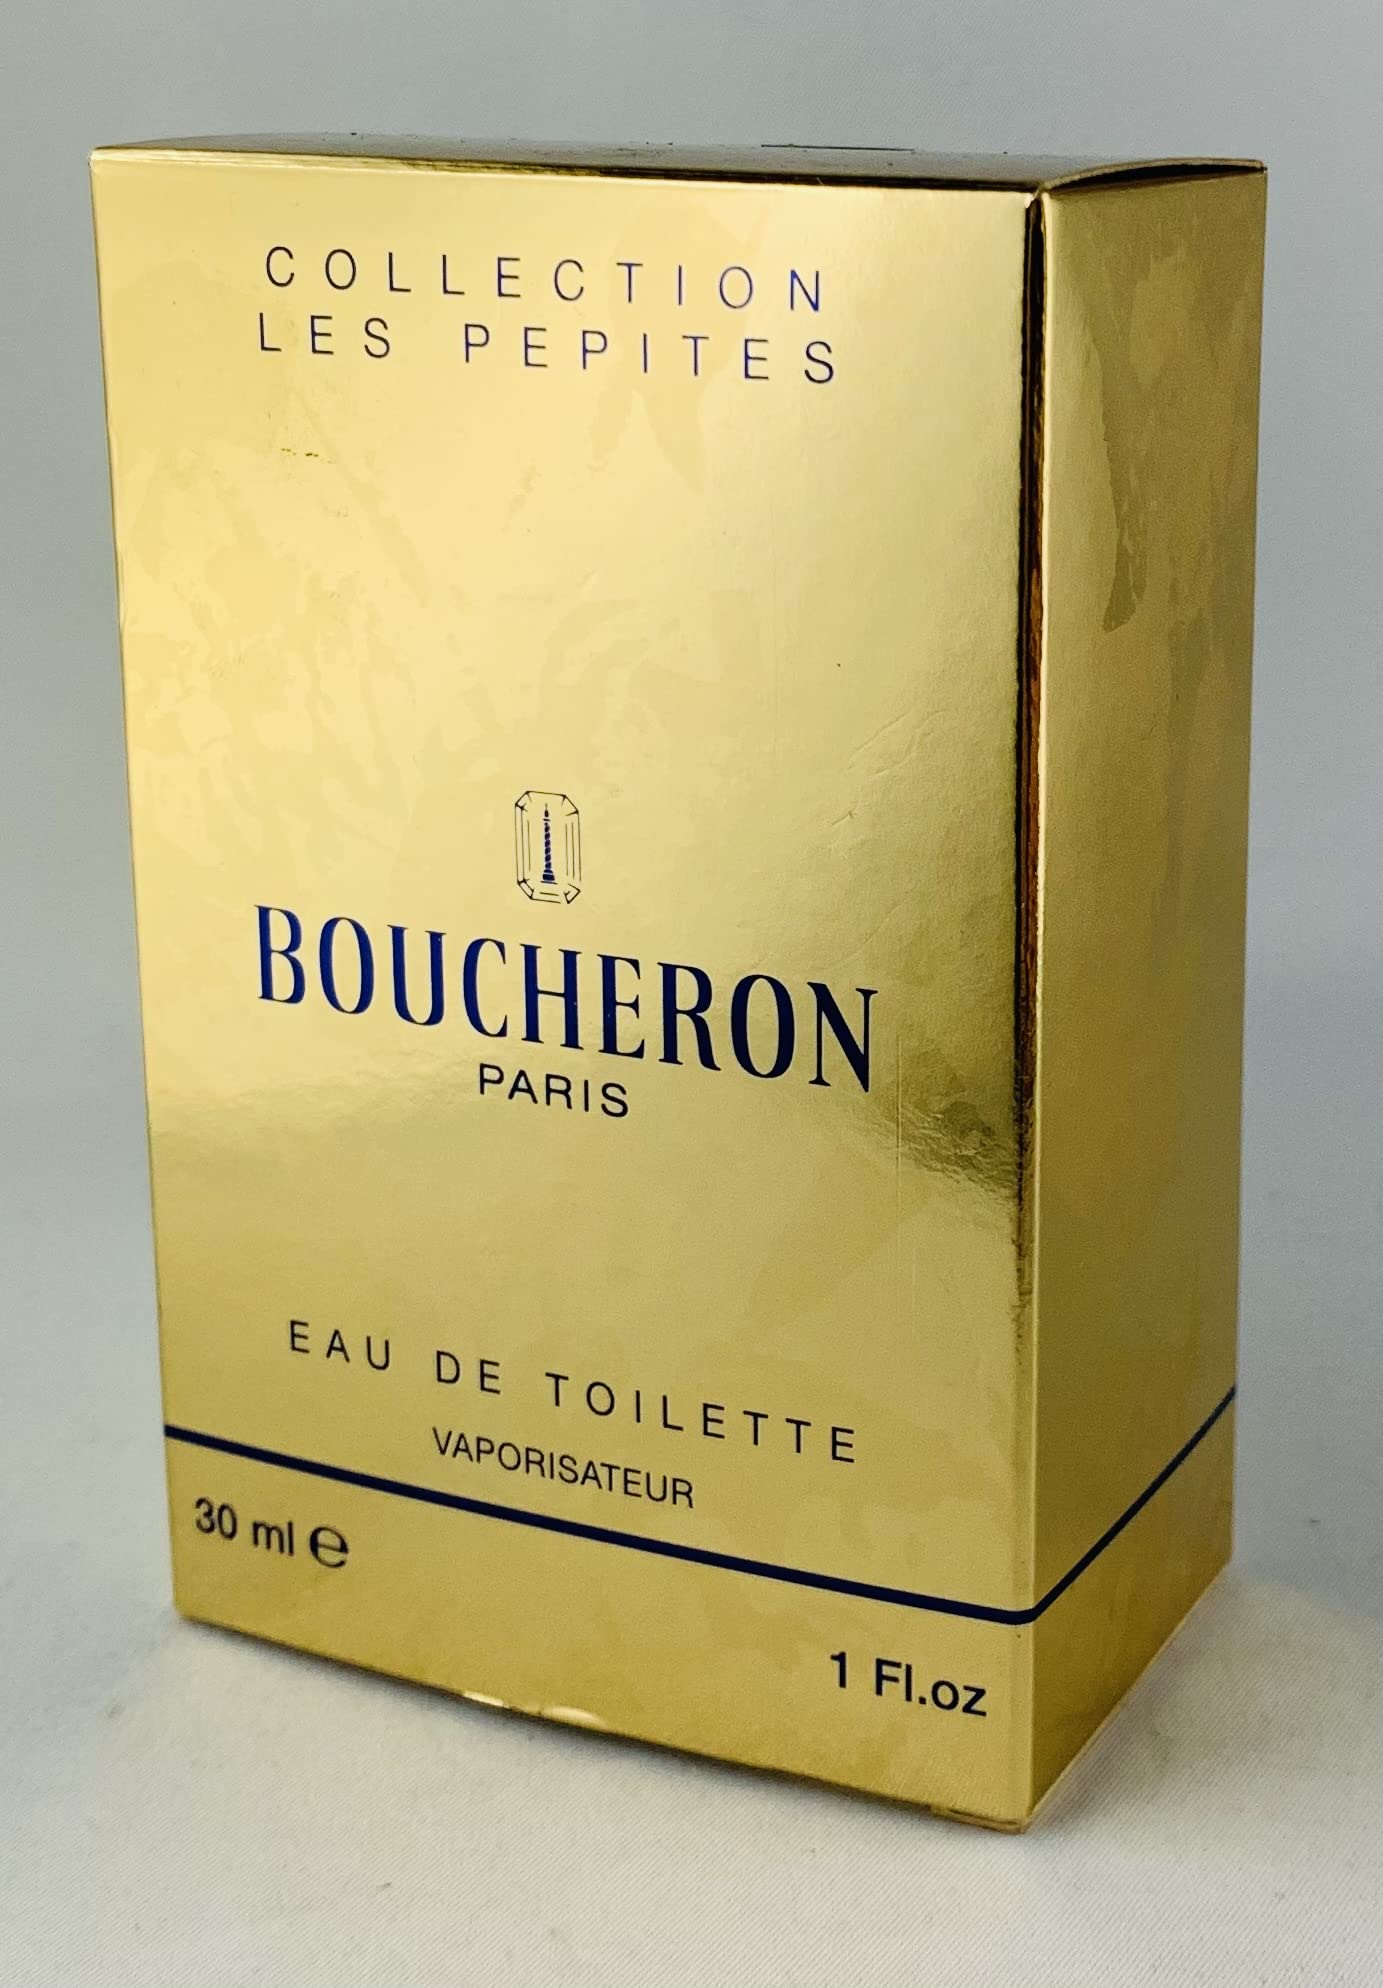 Boucheron Paris collection les pepites eau de toilette 30 ml